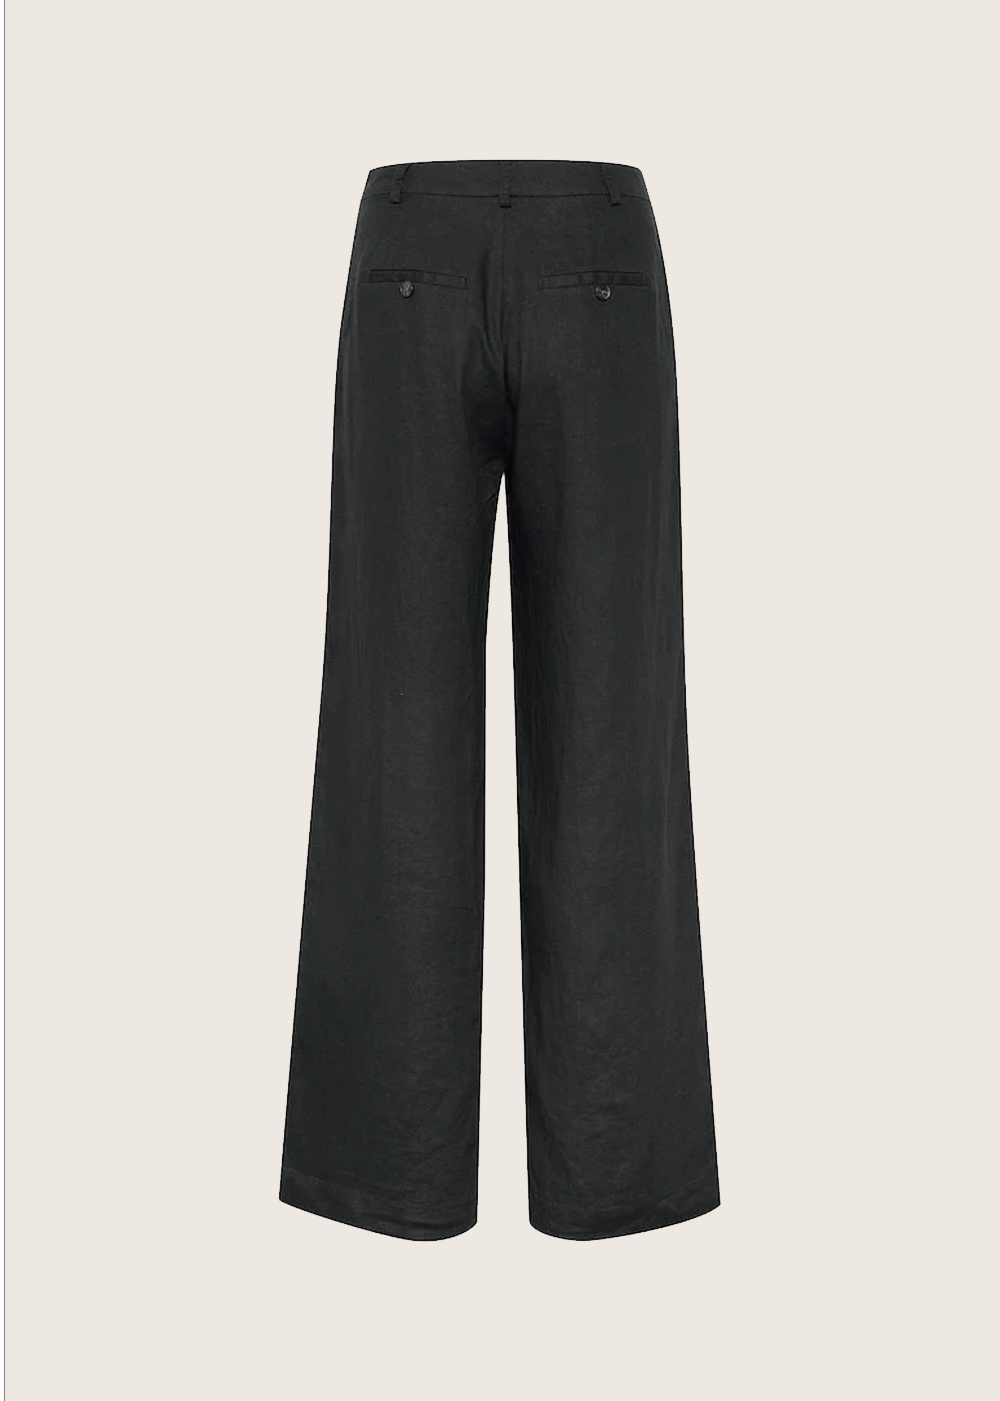 Ninnes Linen Suit Pant - Part Two - Danali